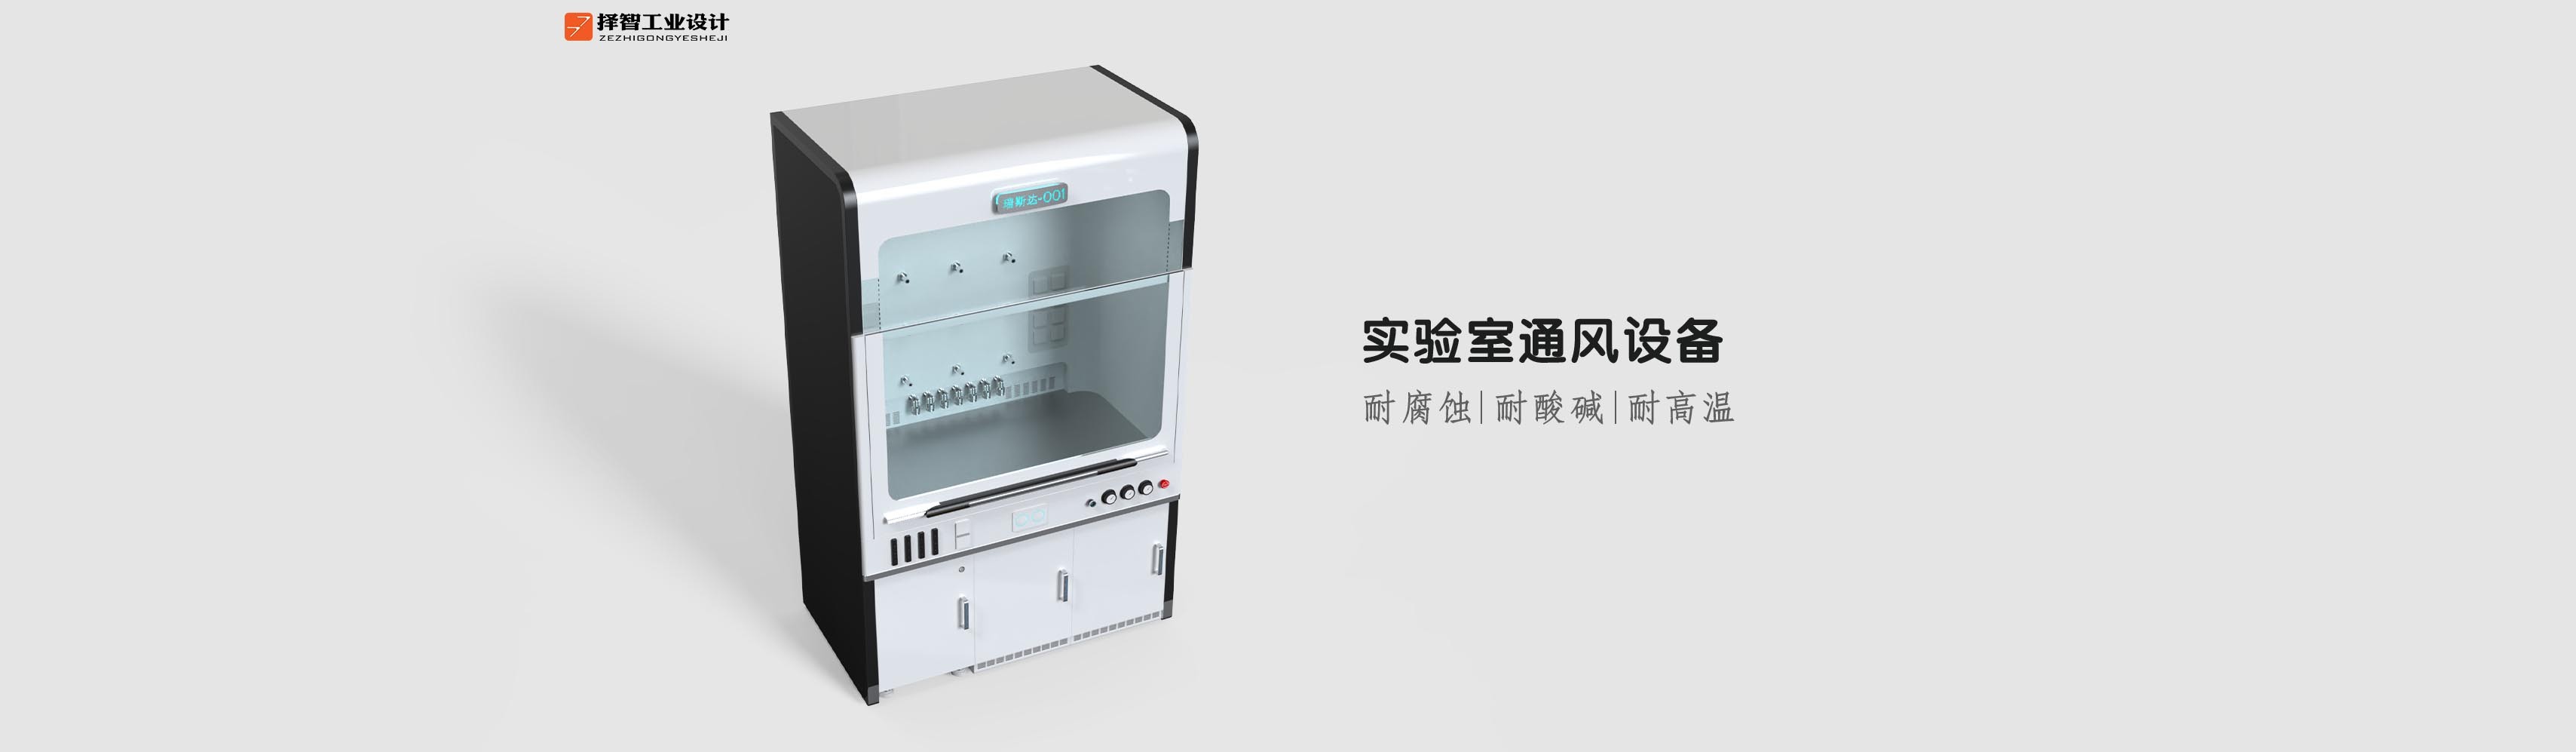 上海苏州产品设计工业产品外观设计结构设计实验室通风设备外观设计